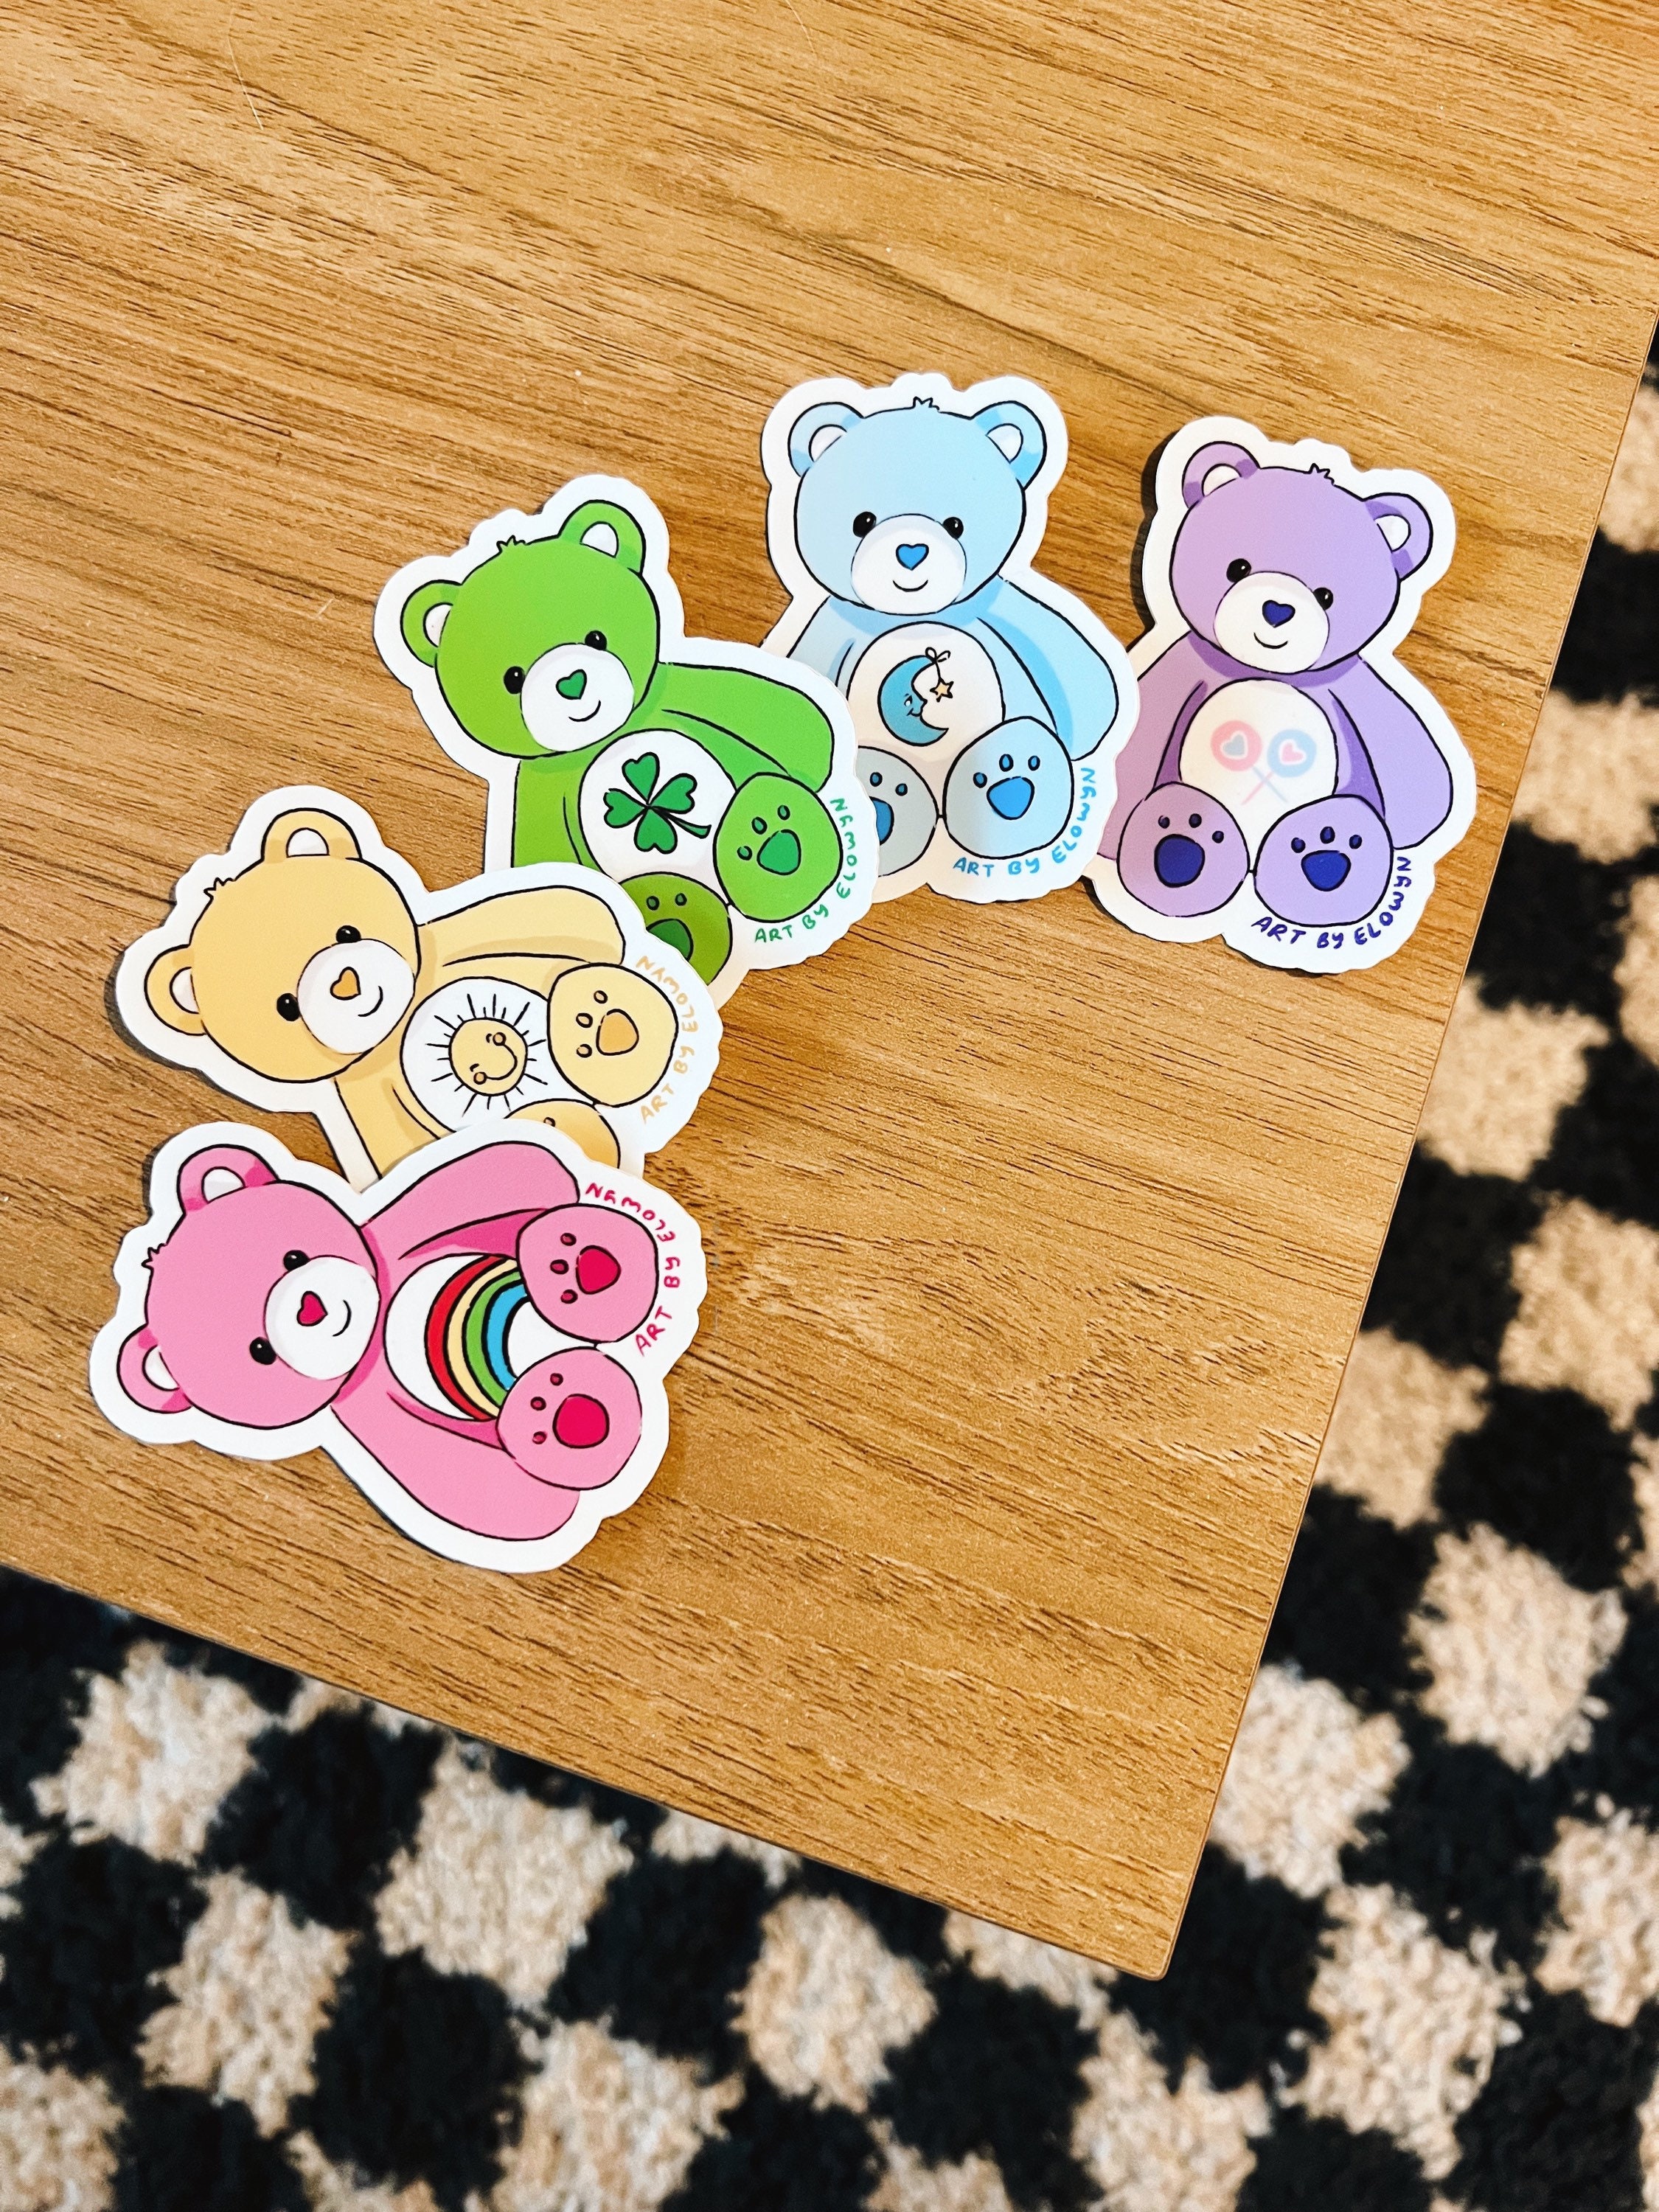 Cheer Bear Fuzzy Sticker – Snark Gifts